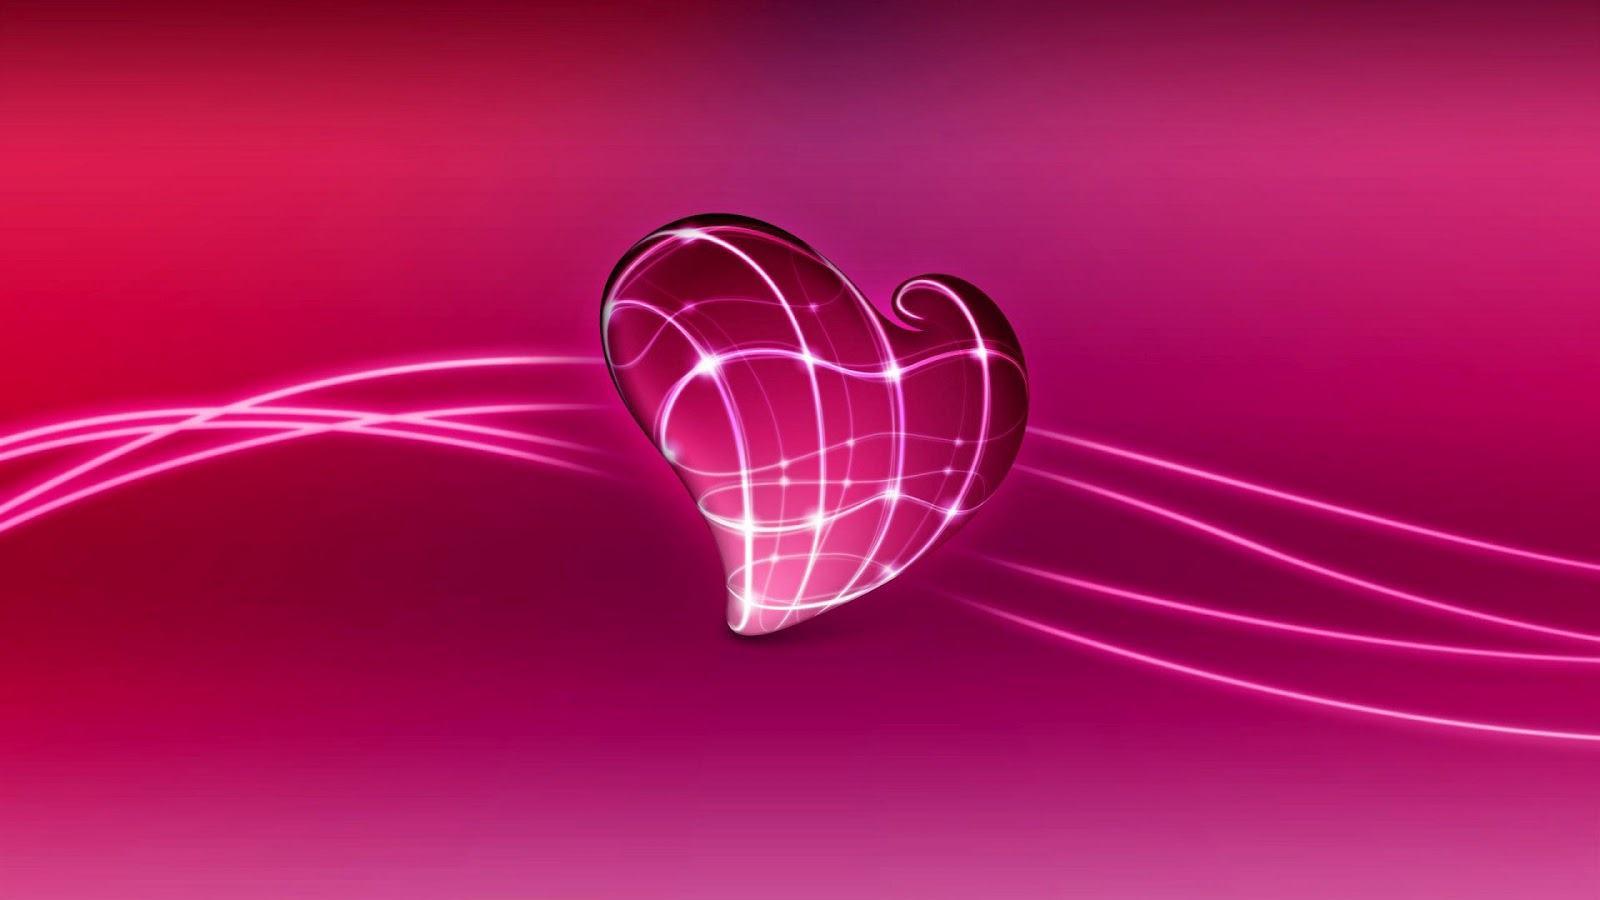 Pink 3D computer background heart made glass center HD Wallpaper